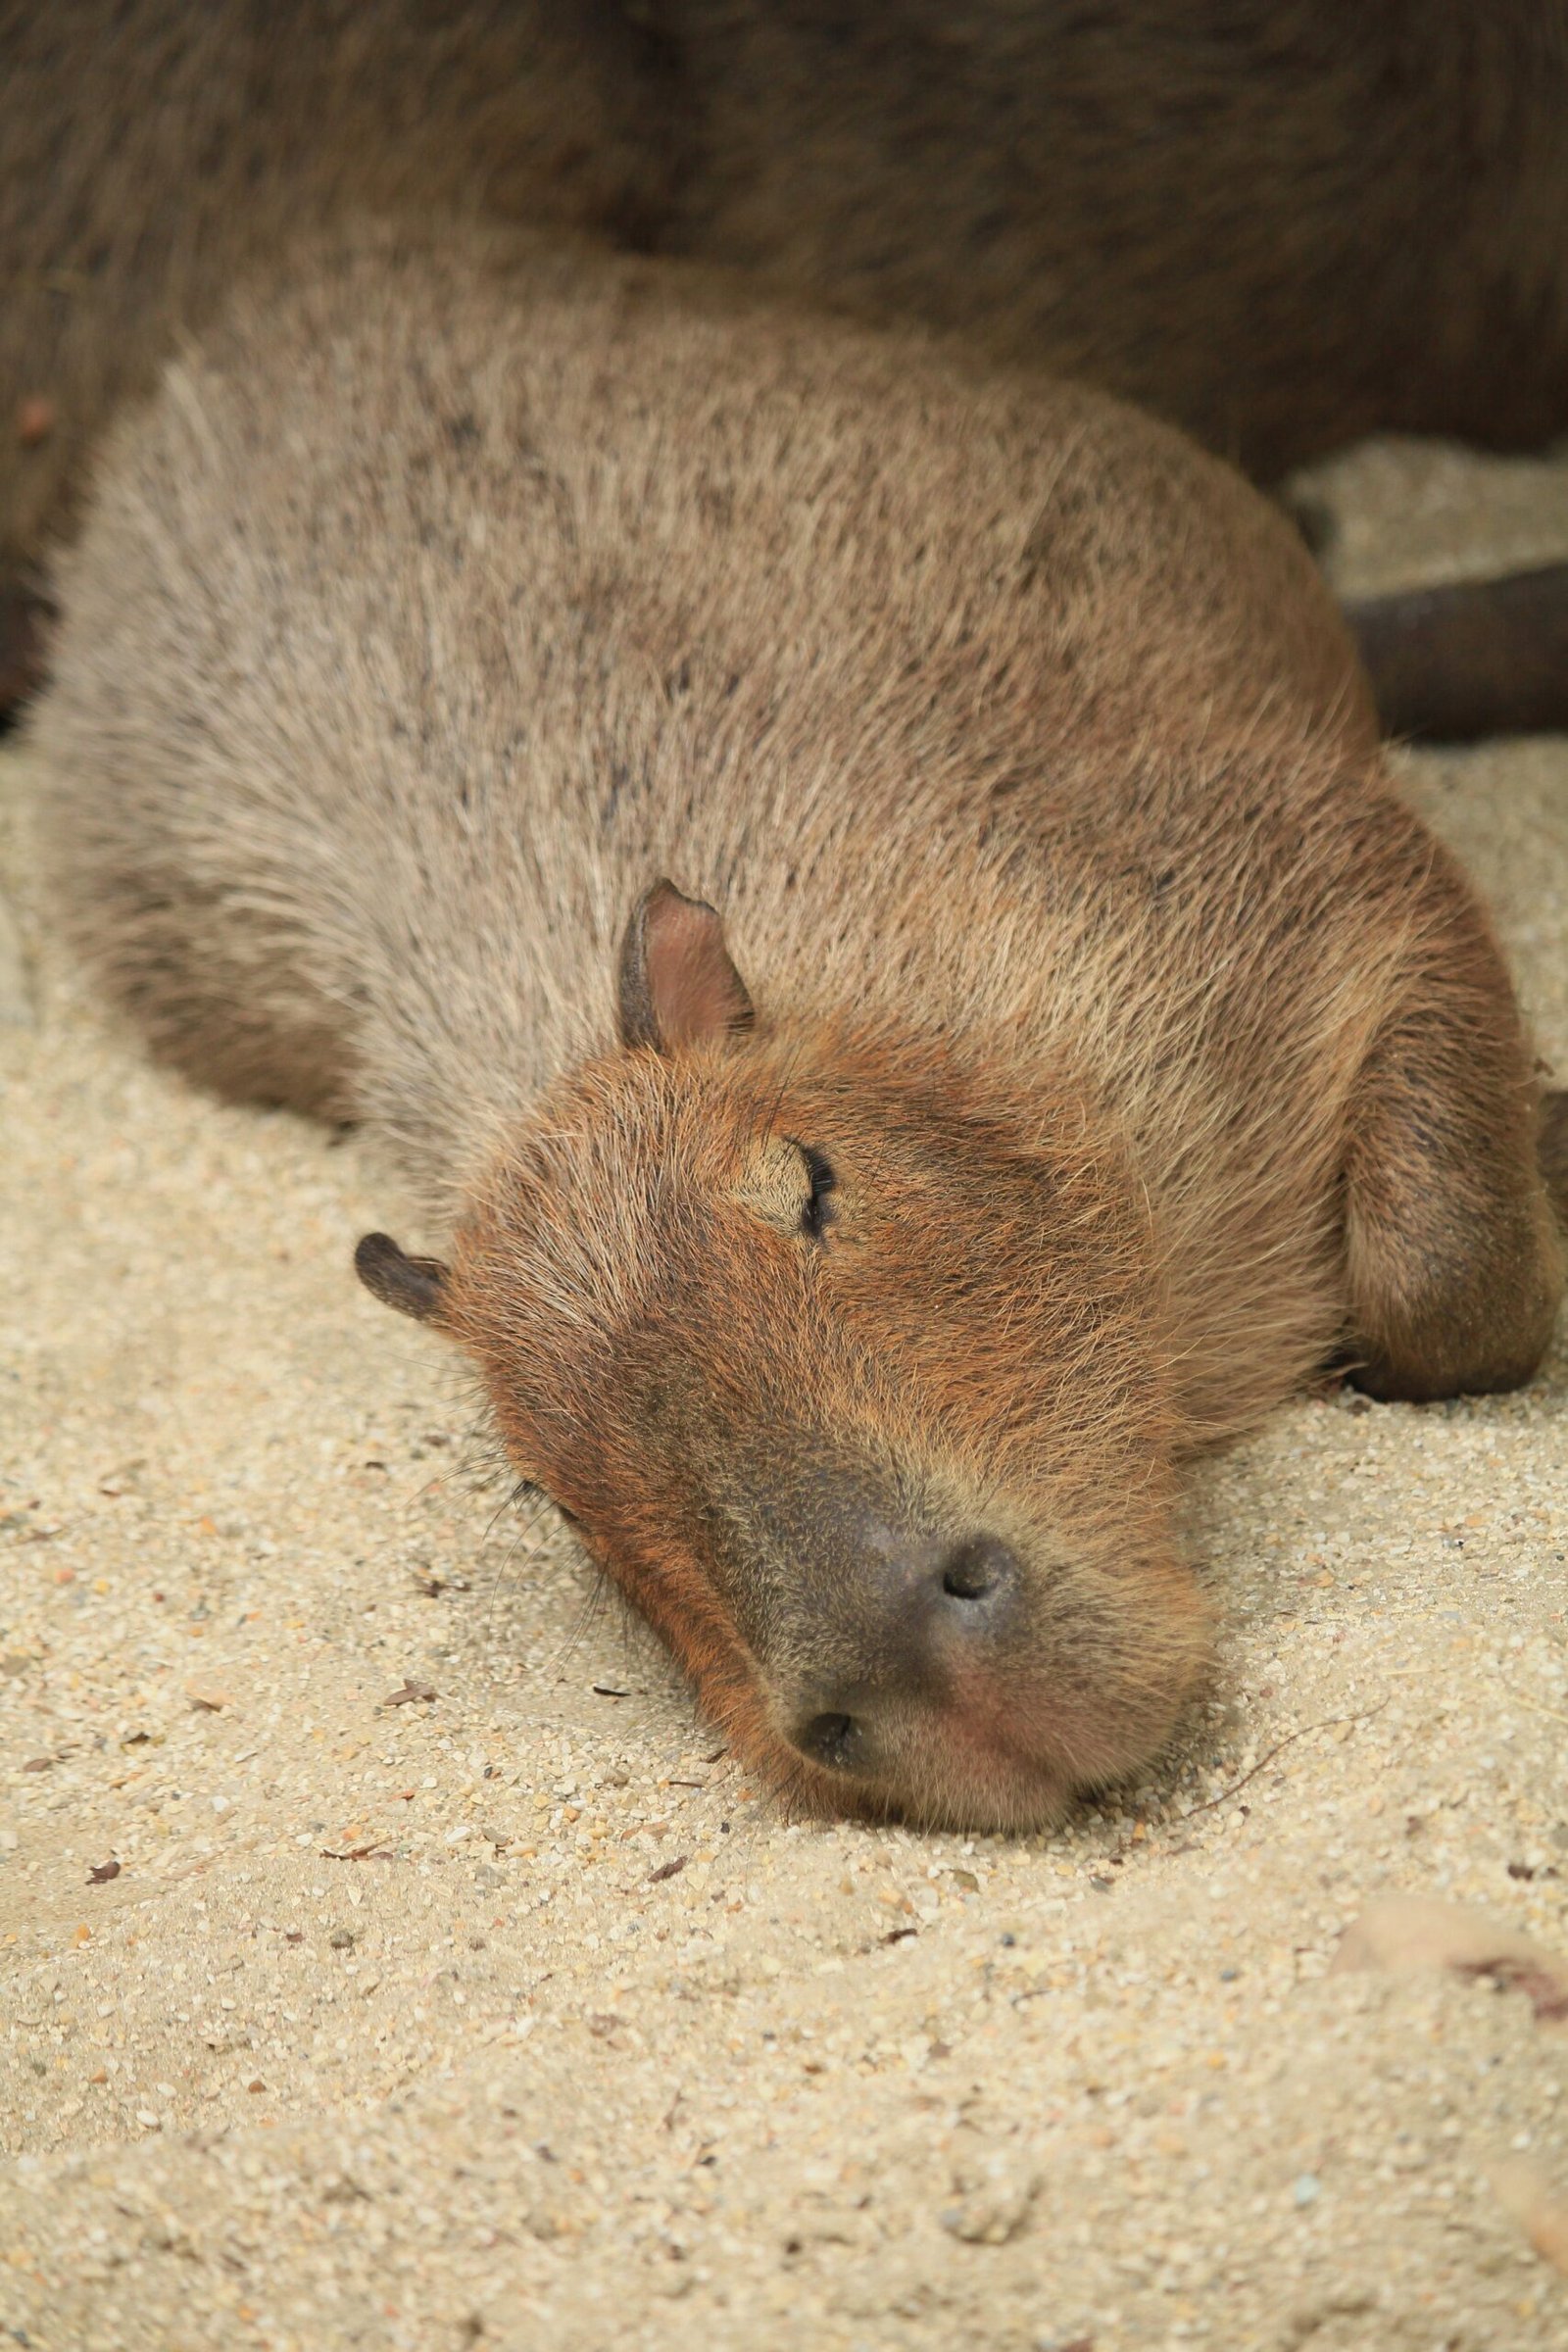 Our Planet: The Capybaras Episode